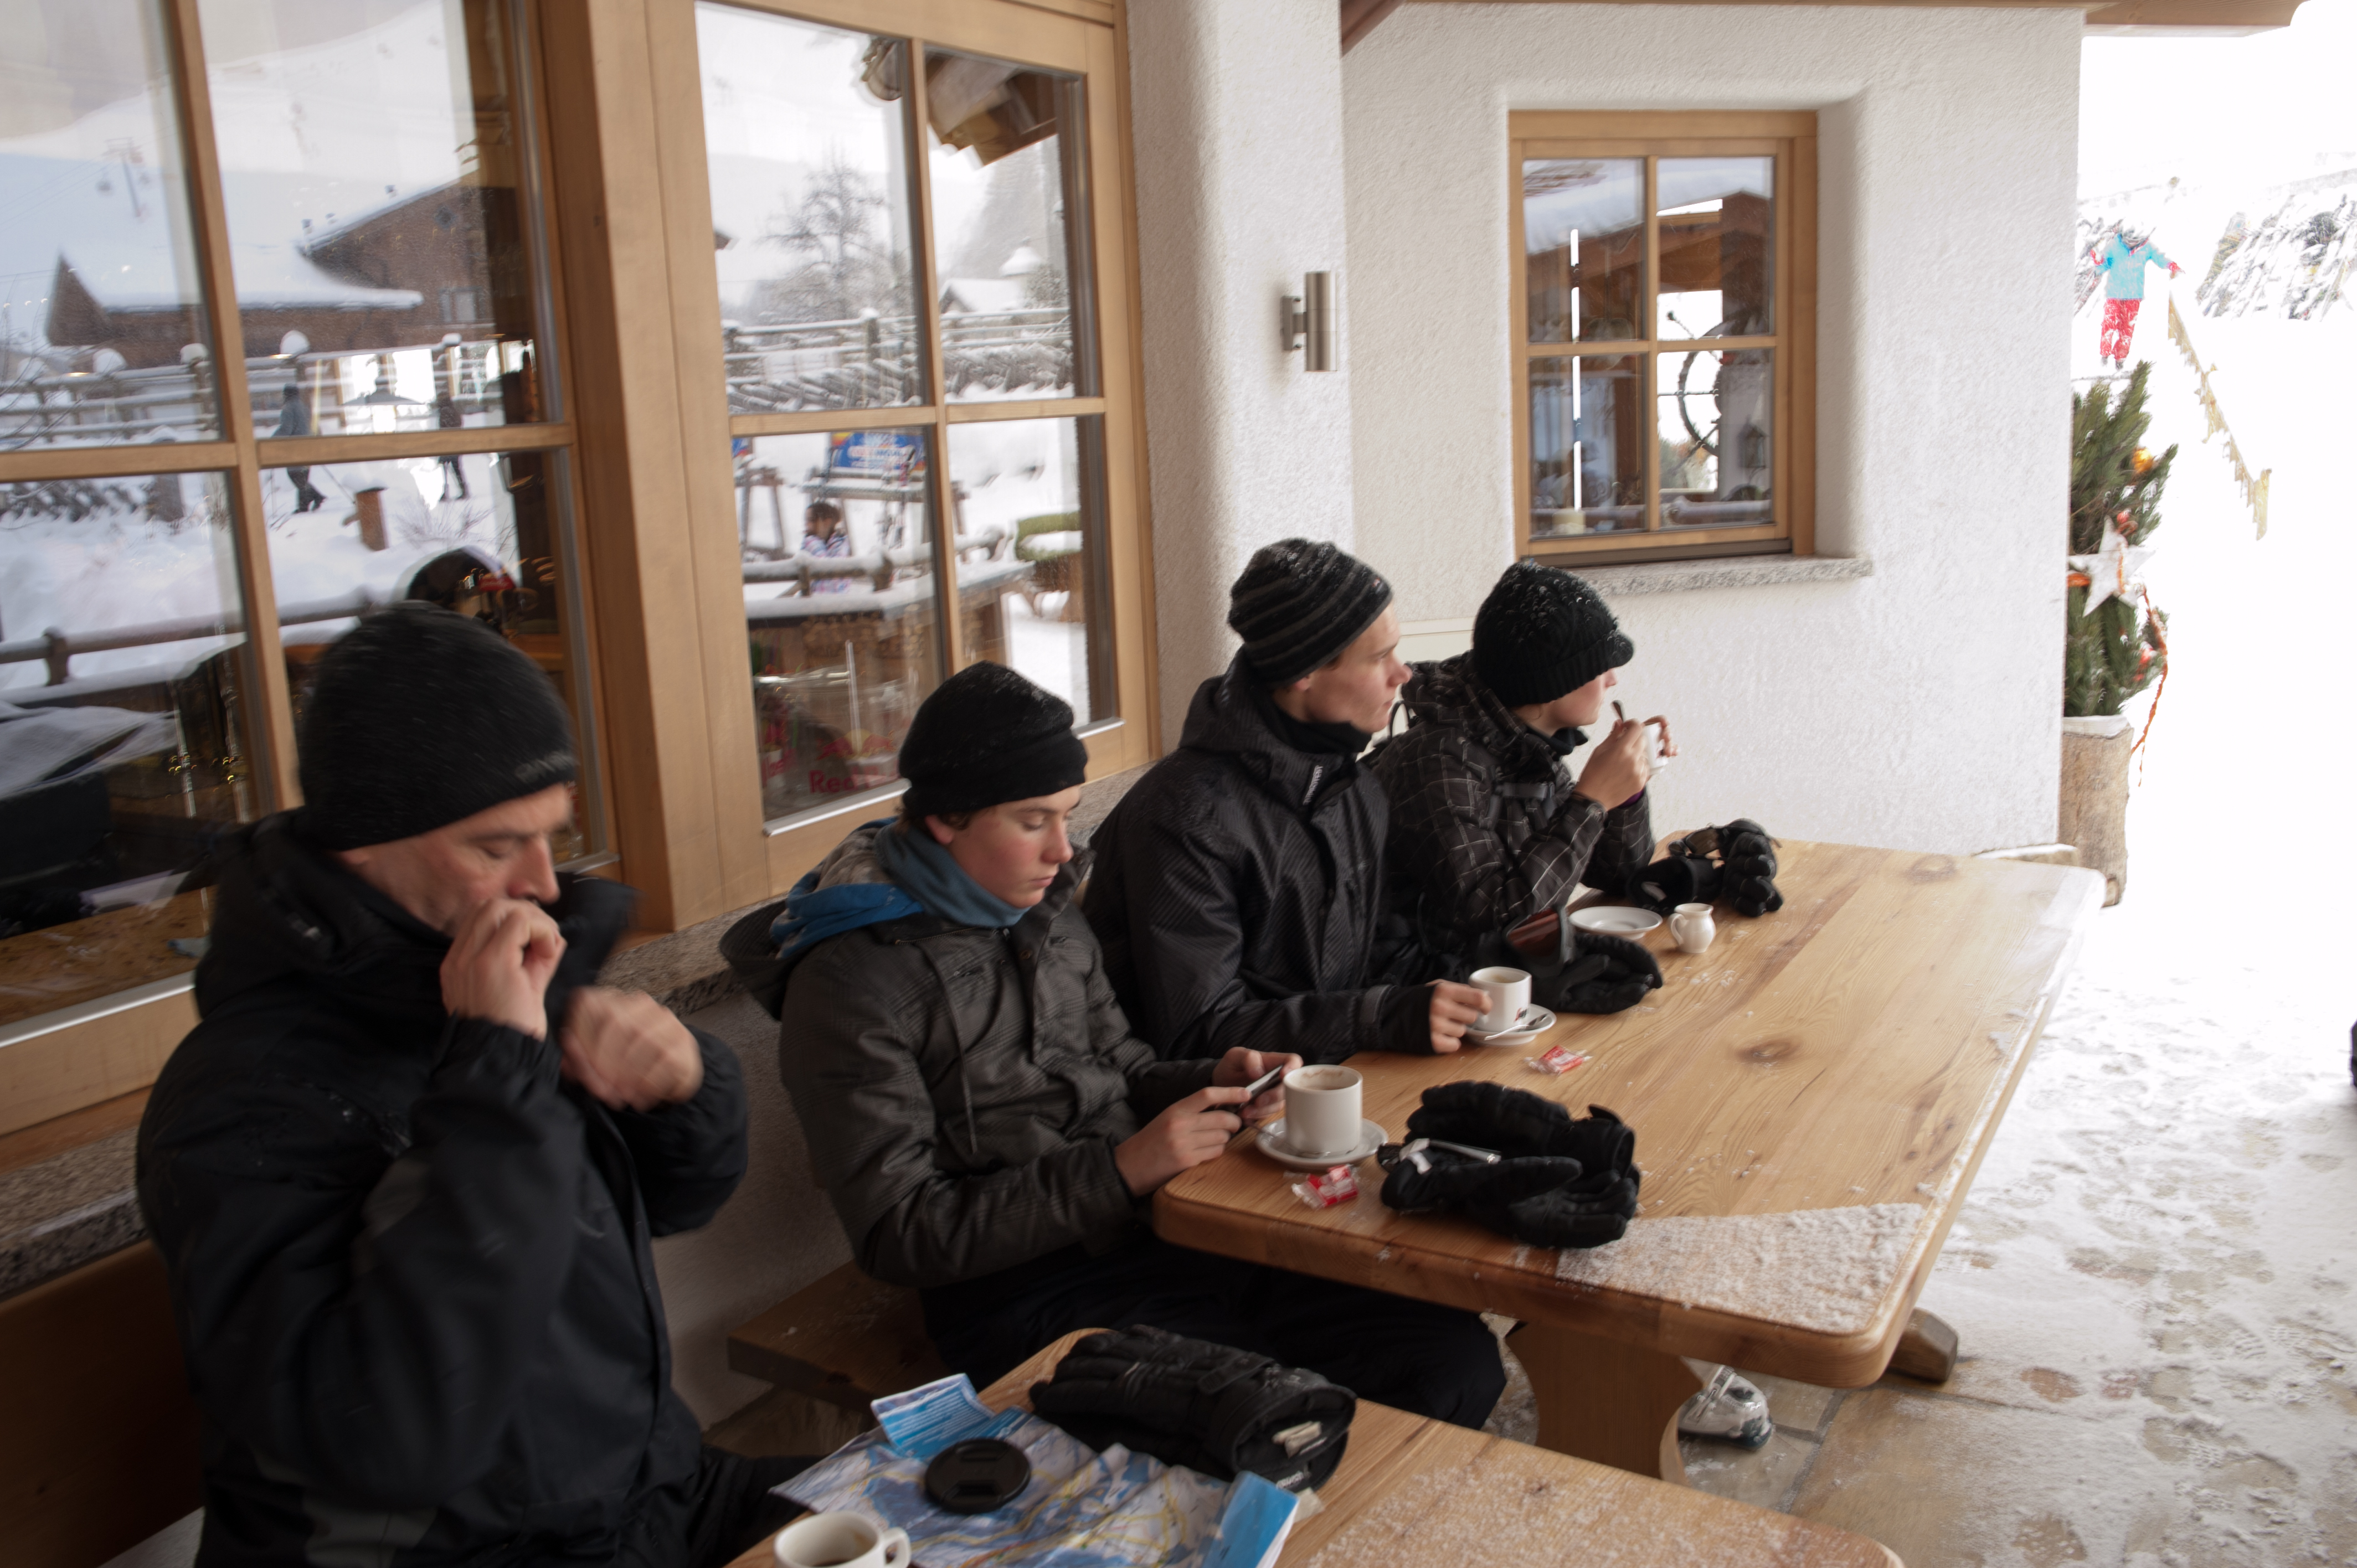 Drinking coffee at a ski hut